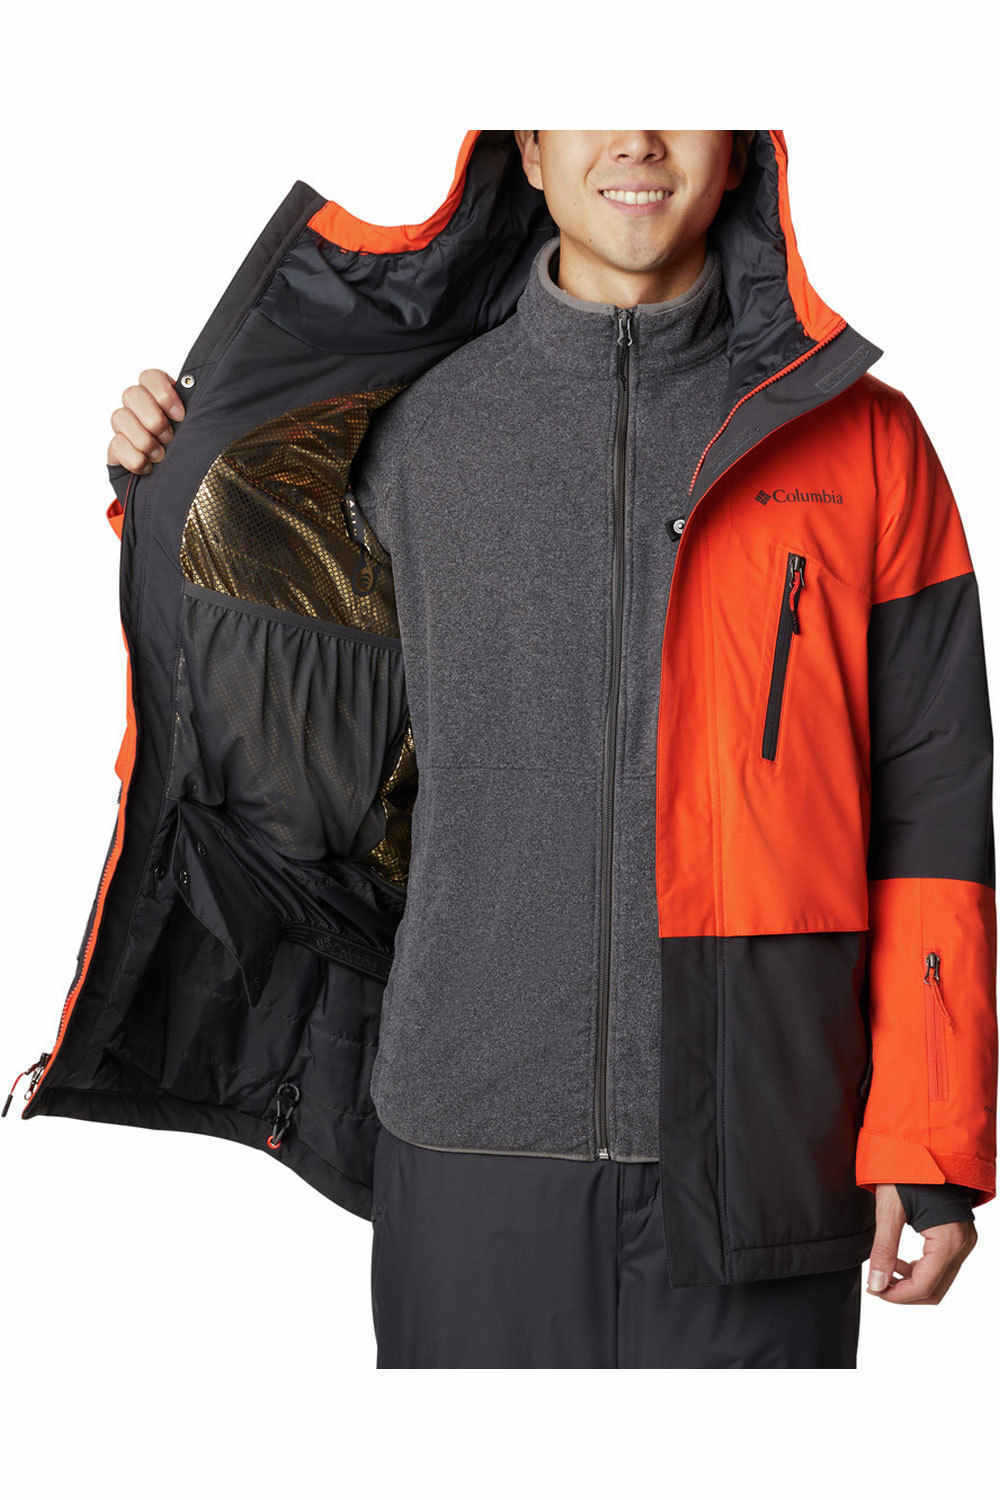 Columbia chaqueta esquí hombre AERIAL ASCENDER RED QUARTZ 05